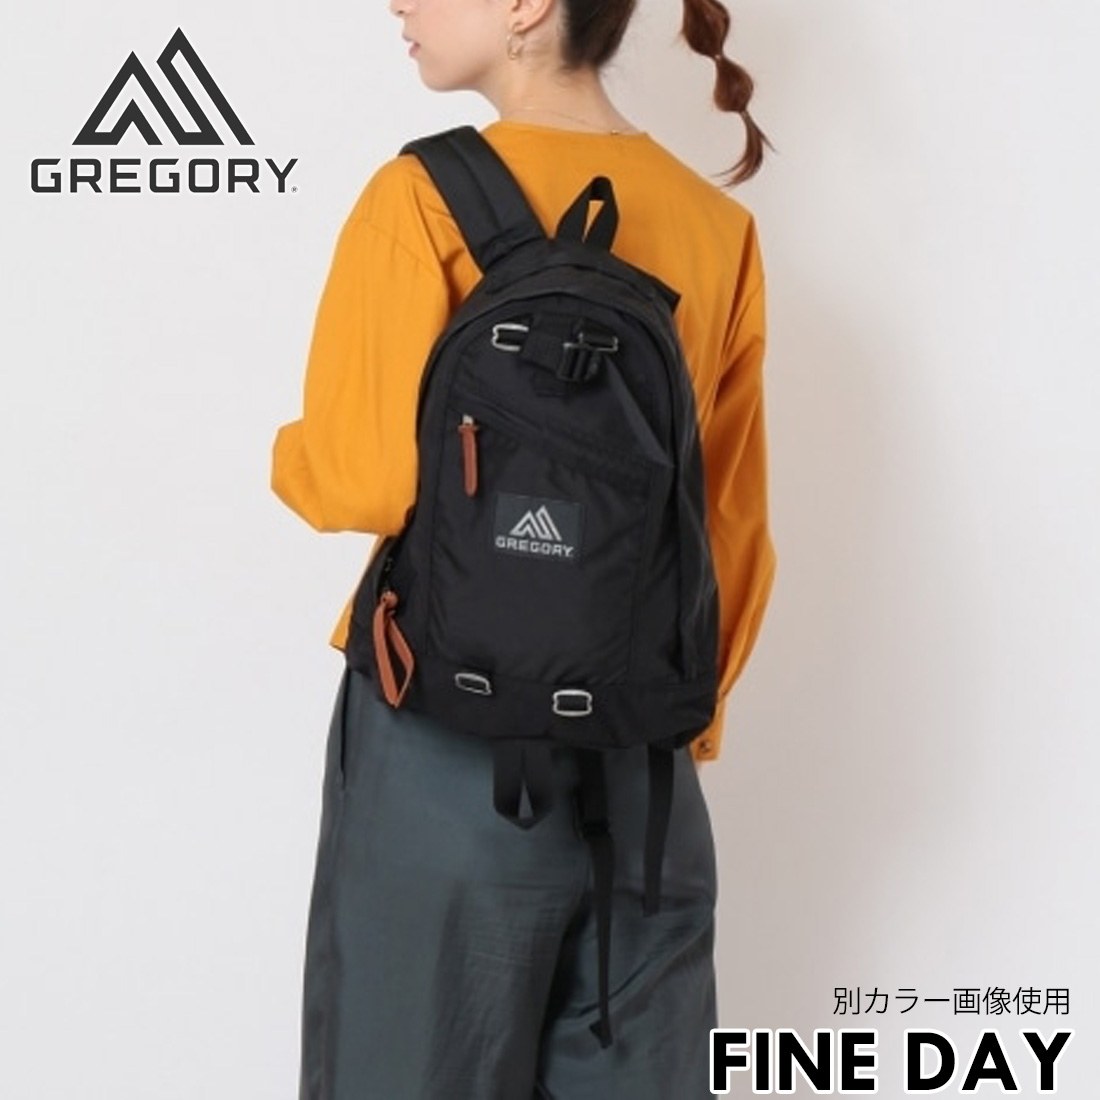 GREGORY FINE DAY／グレゴリー リュック ファインデイ - リュック